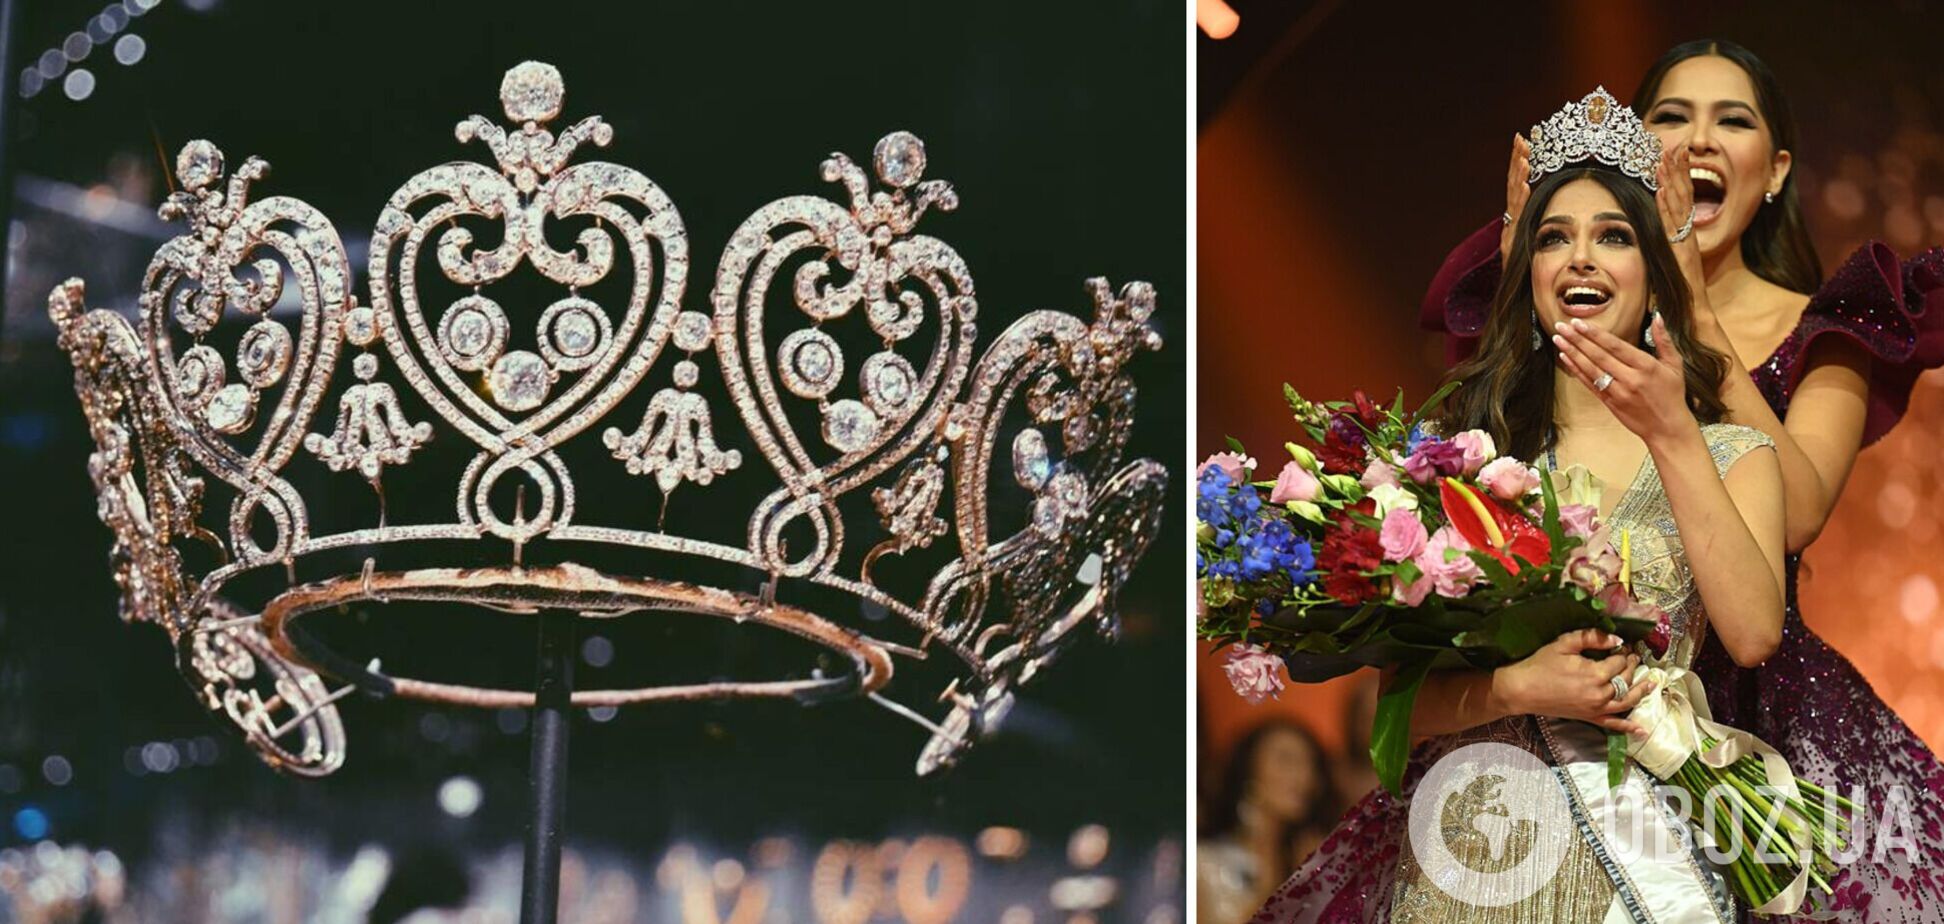 'Мисс Вселенная' изменил правила: впервые в истории беременные, замужние женщины и матери смогут сражаться за корону